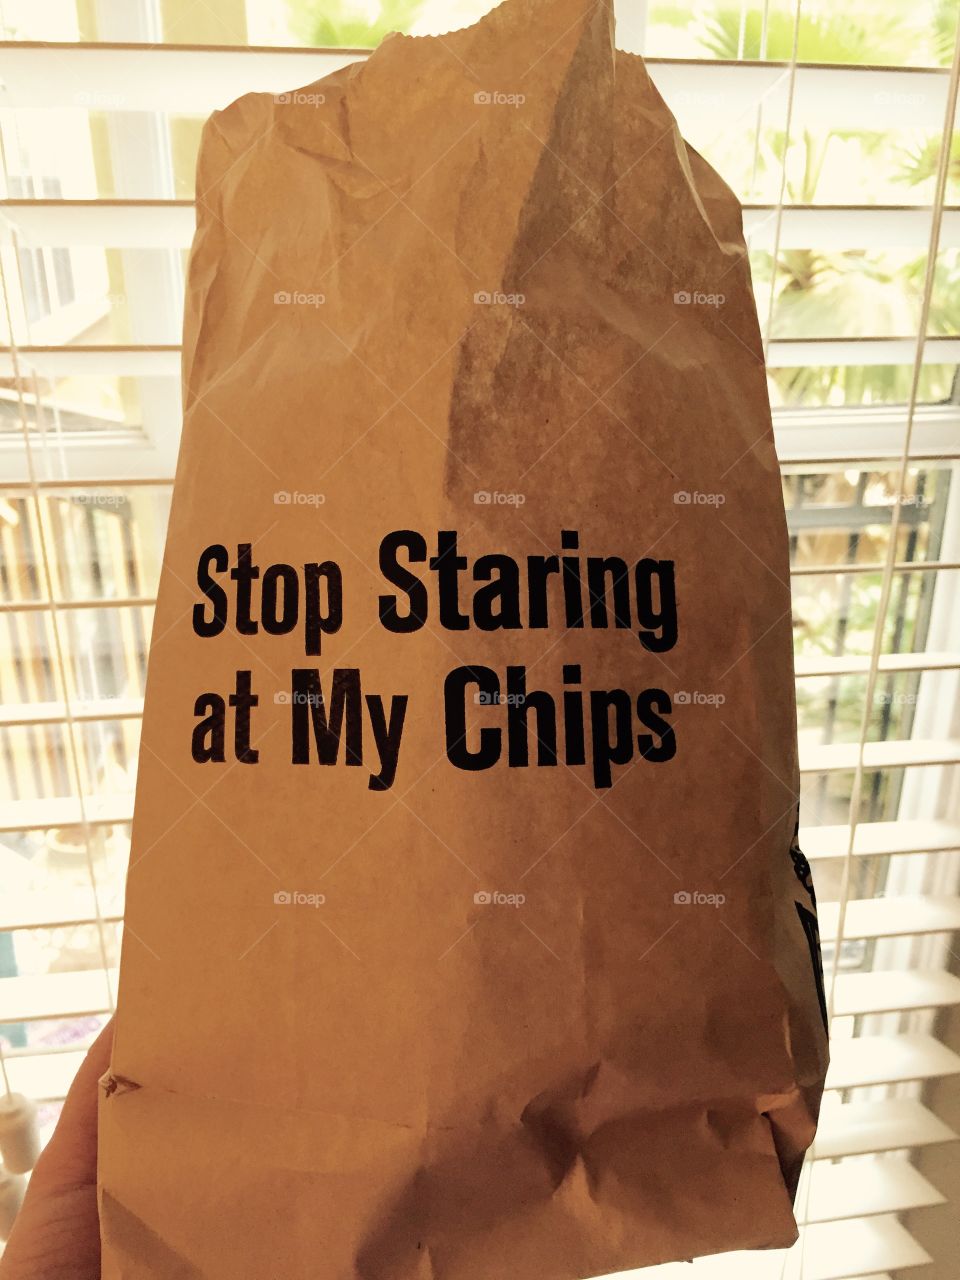 Bag of Chips. Bag of Chips